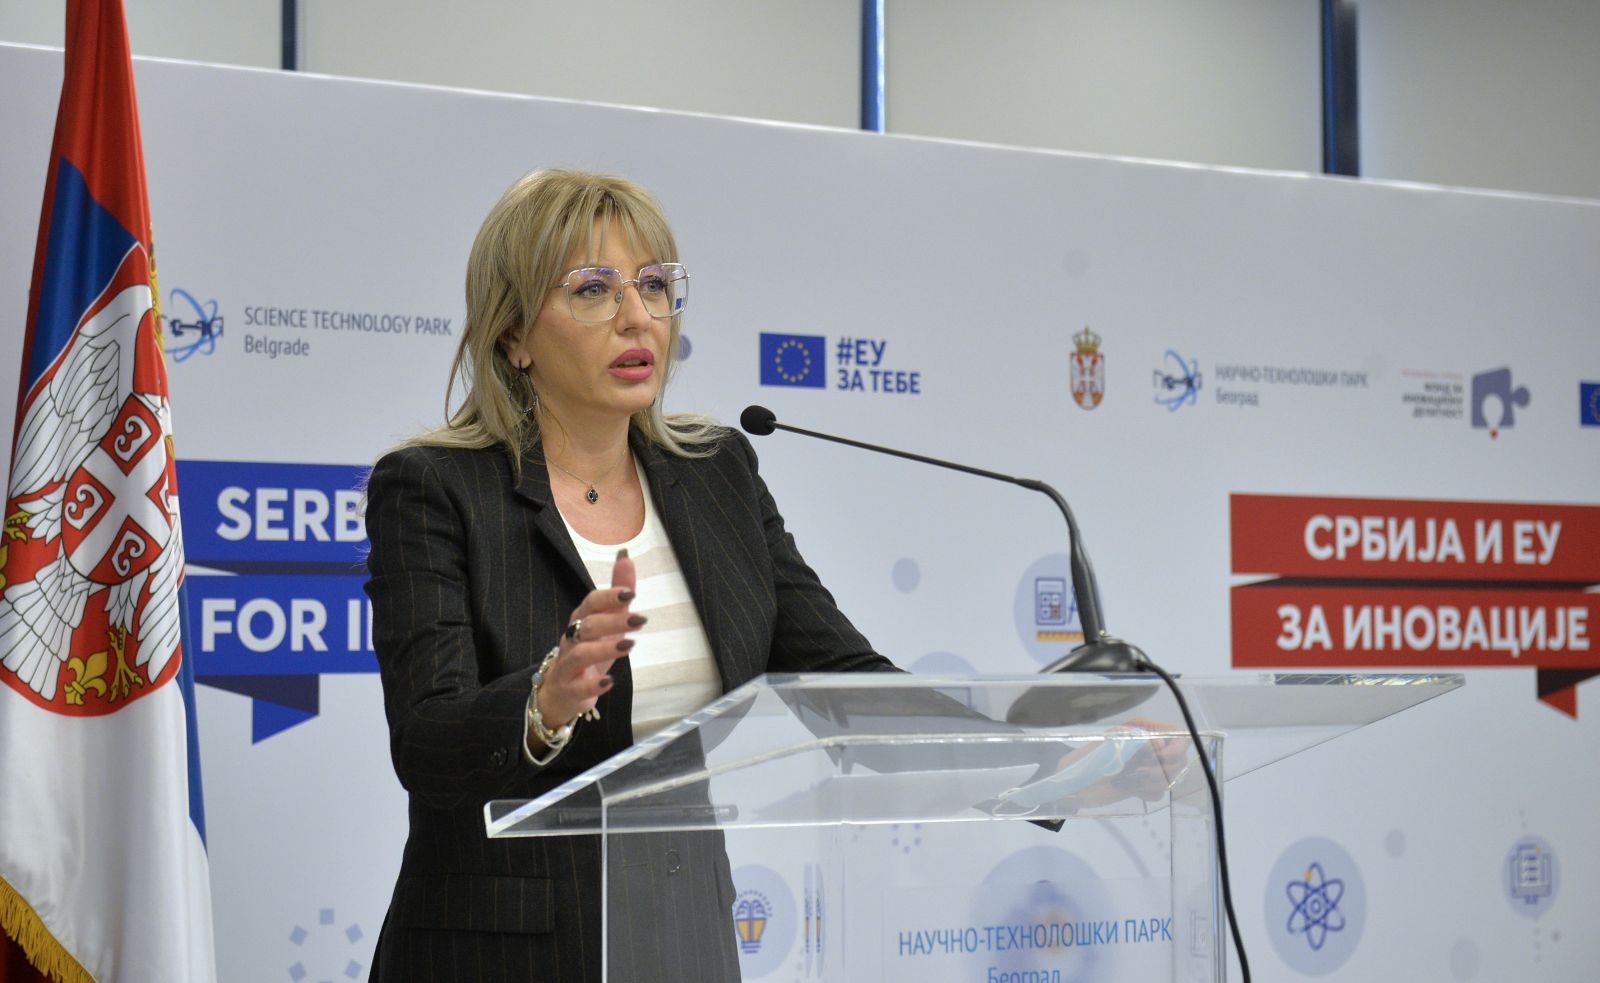 J. Joksimović: Inovacijama podižemo konkurentnost Srbije i EU